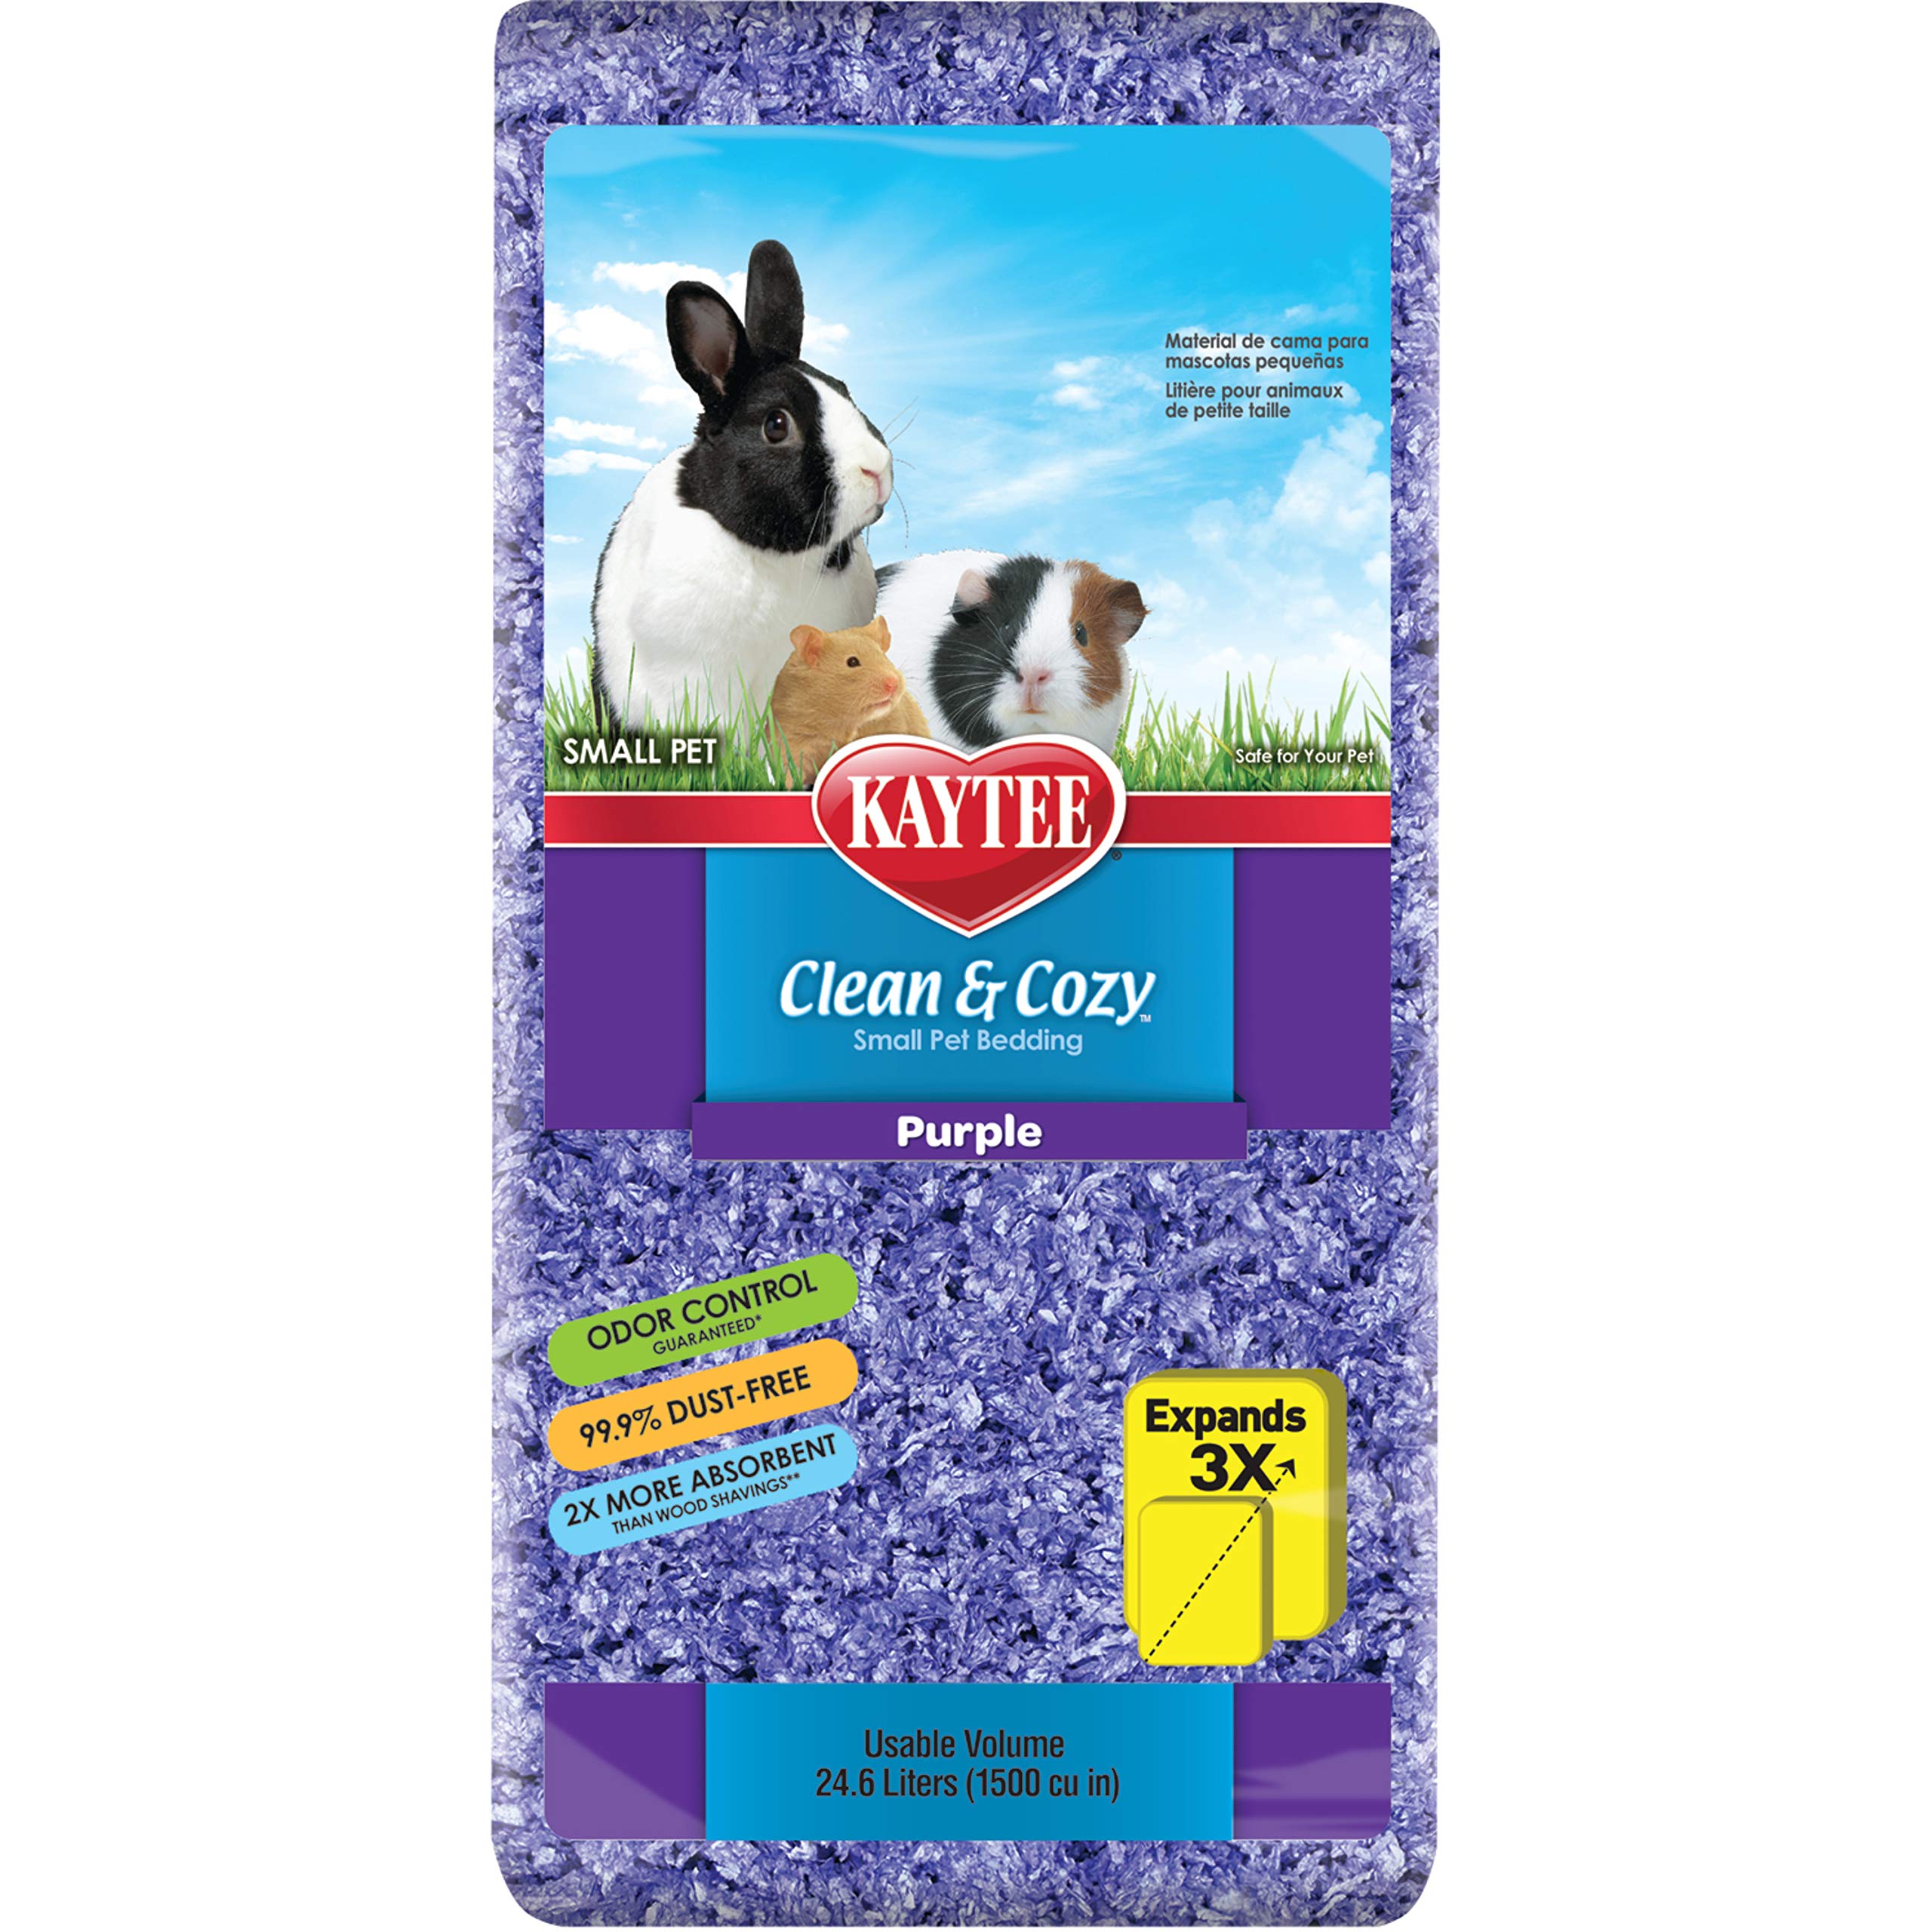 Kaytee 894658 Clean & Cozy Streu für kleine Haustiere / Nager / Hamster, 99.9 % staubfrei, Geruchskontrolle - 24.6 Liter, lila